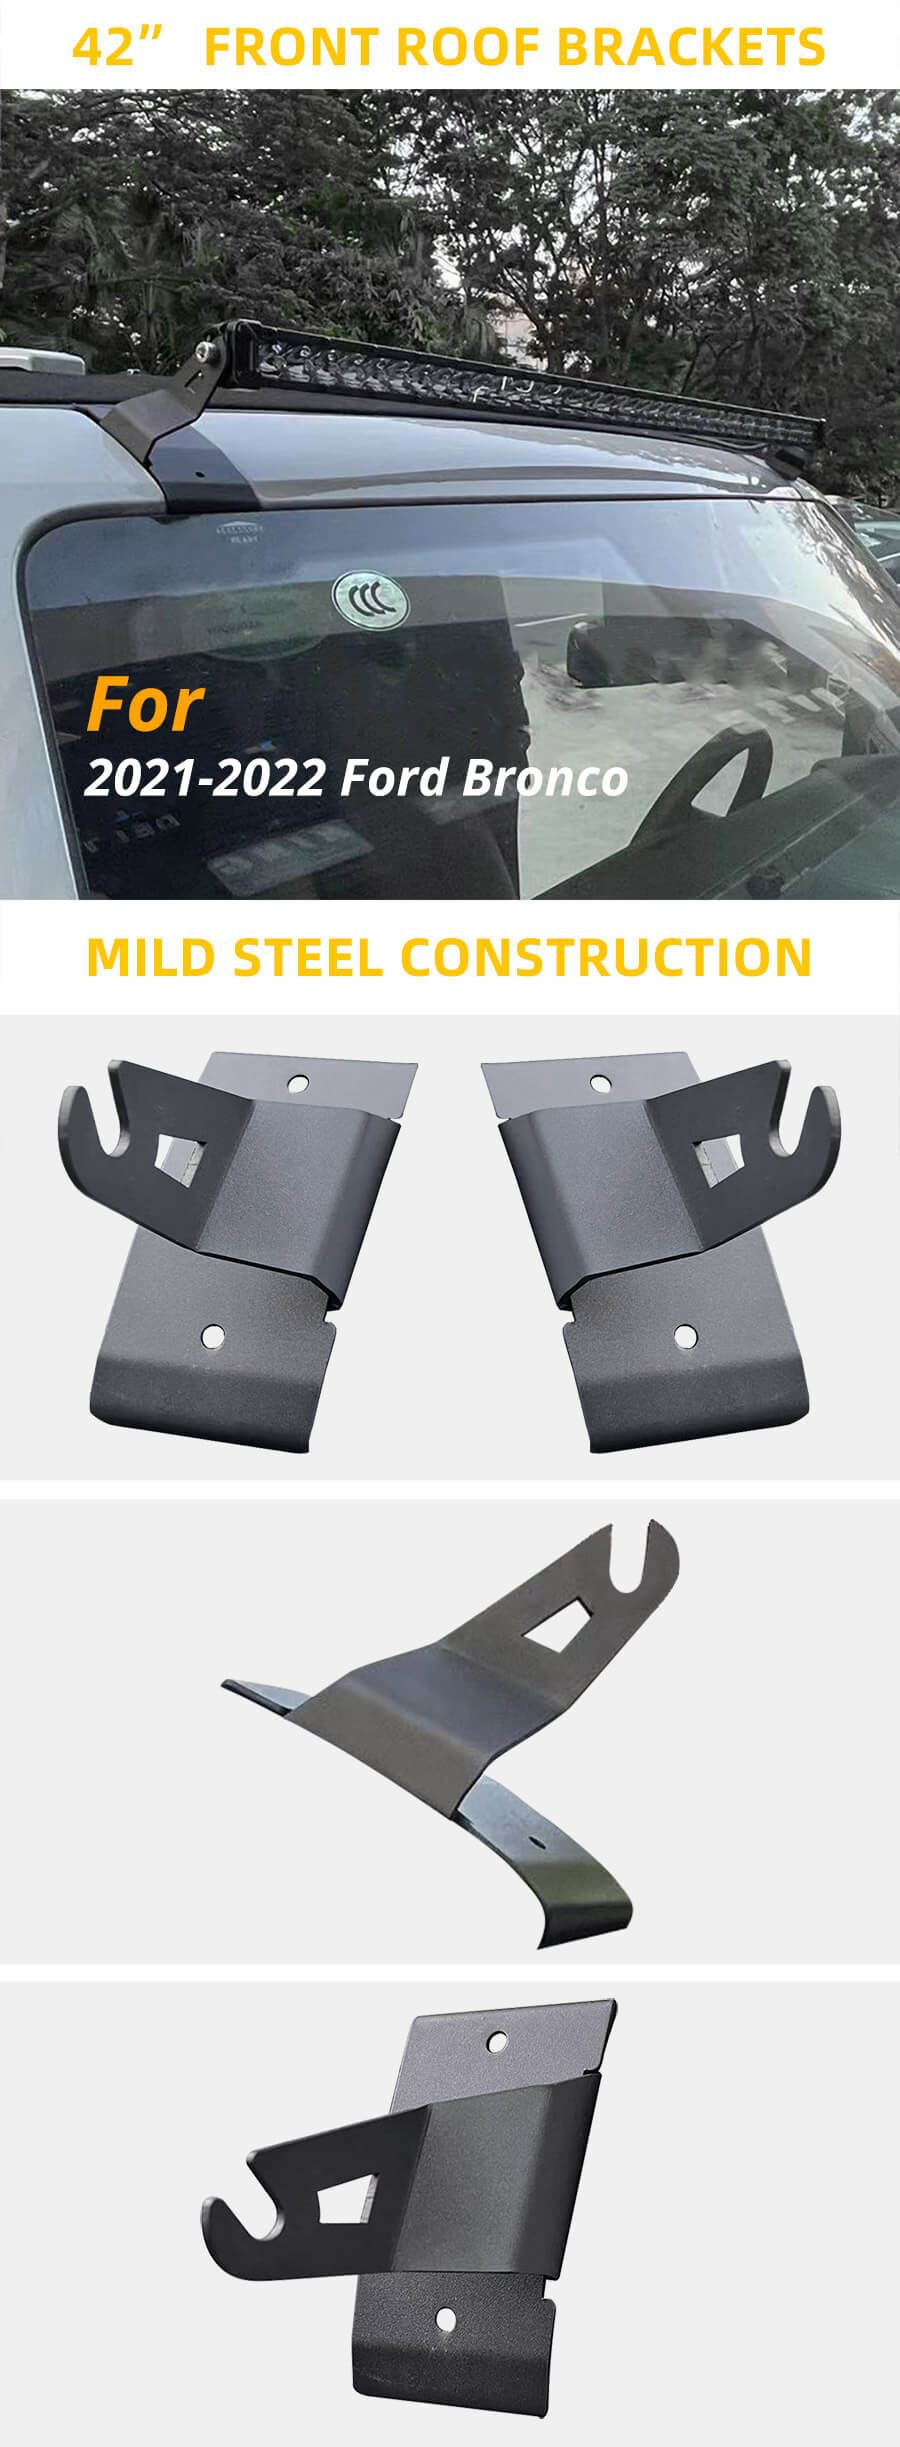 2021-2022 Ford Bronco 42 Front Roof Bracket for Led Light Bar advantages